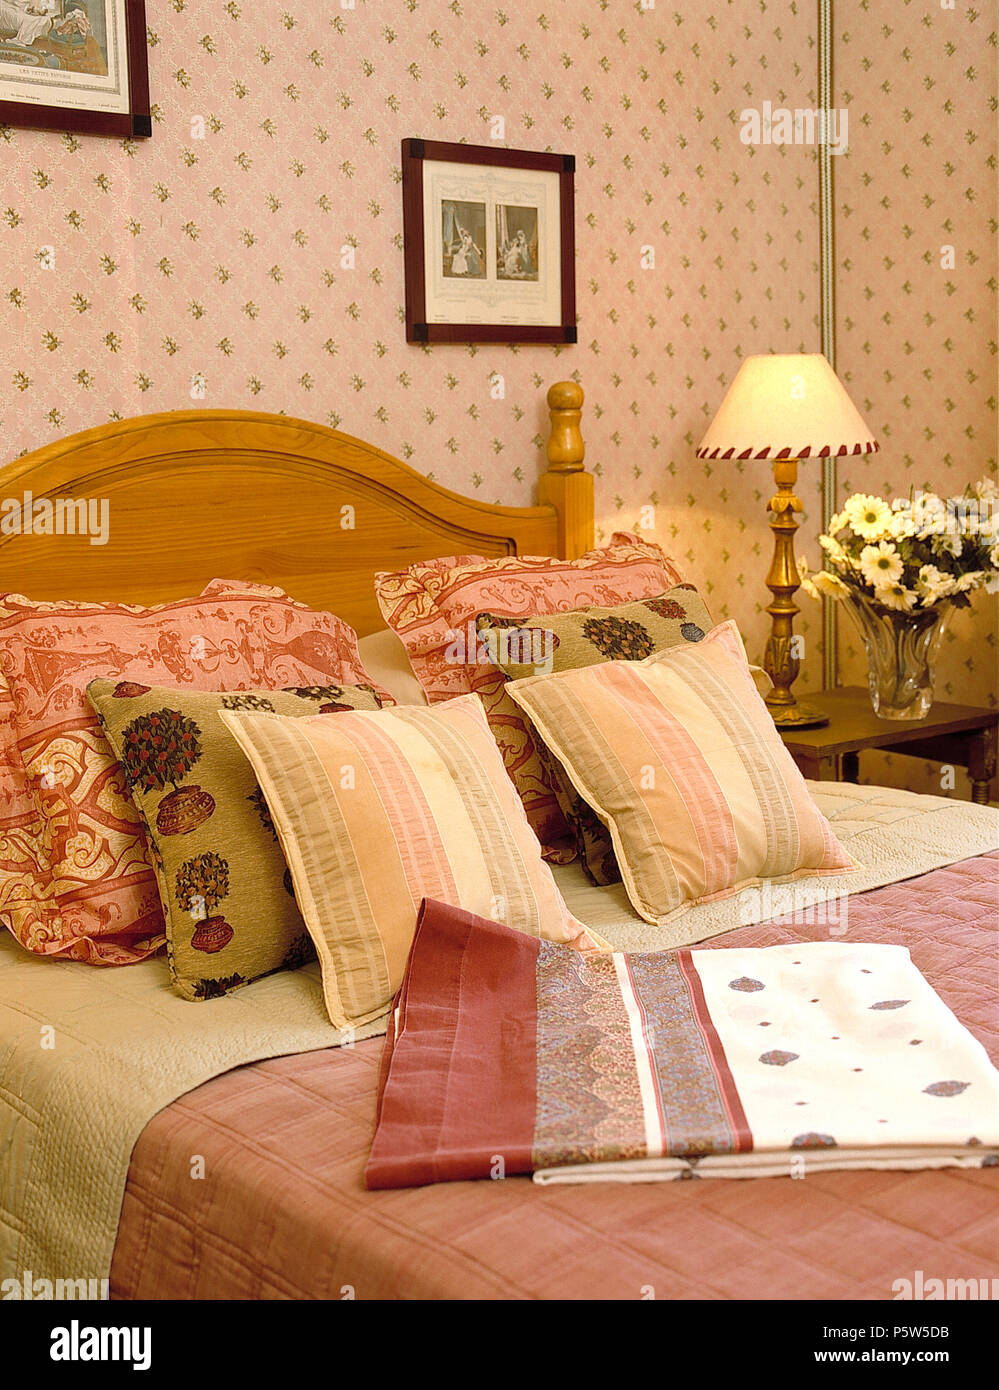 Coussins sur Pine avec lit double dans la chambre rose à motifs papier peint et lampe allumée Banque D'Images